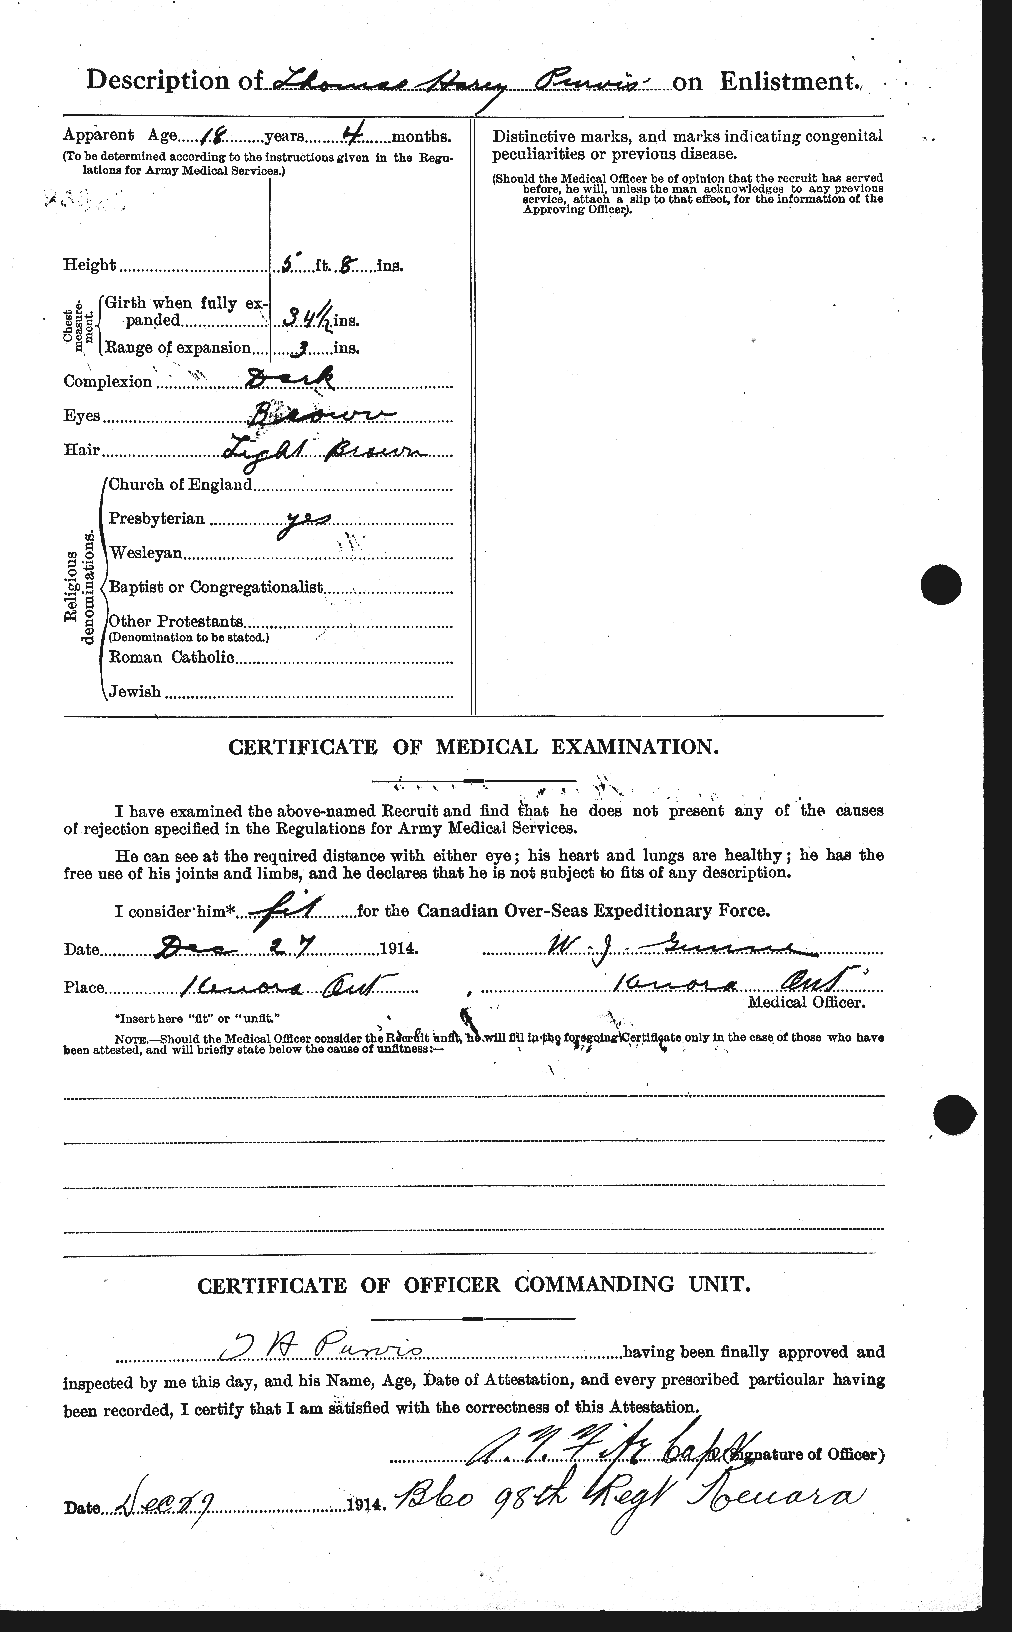 Dossiers du Personnel de la Première Guerre mondiale - CEC 590014b